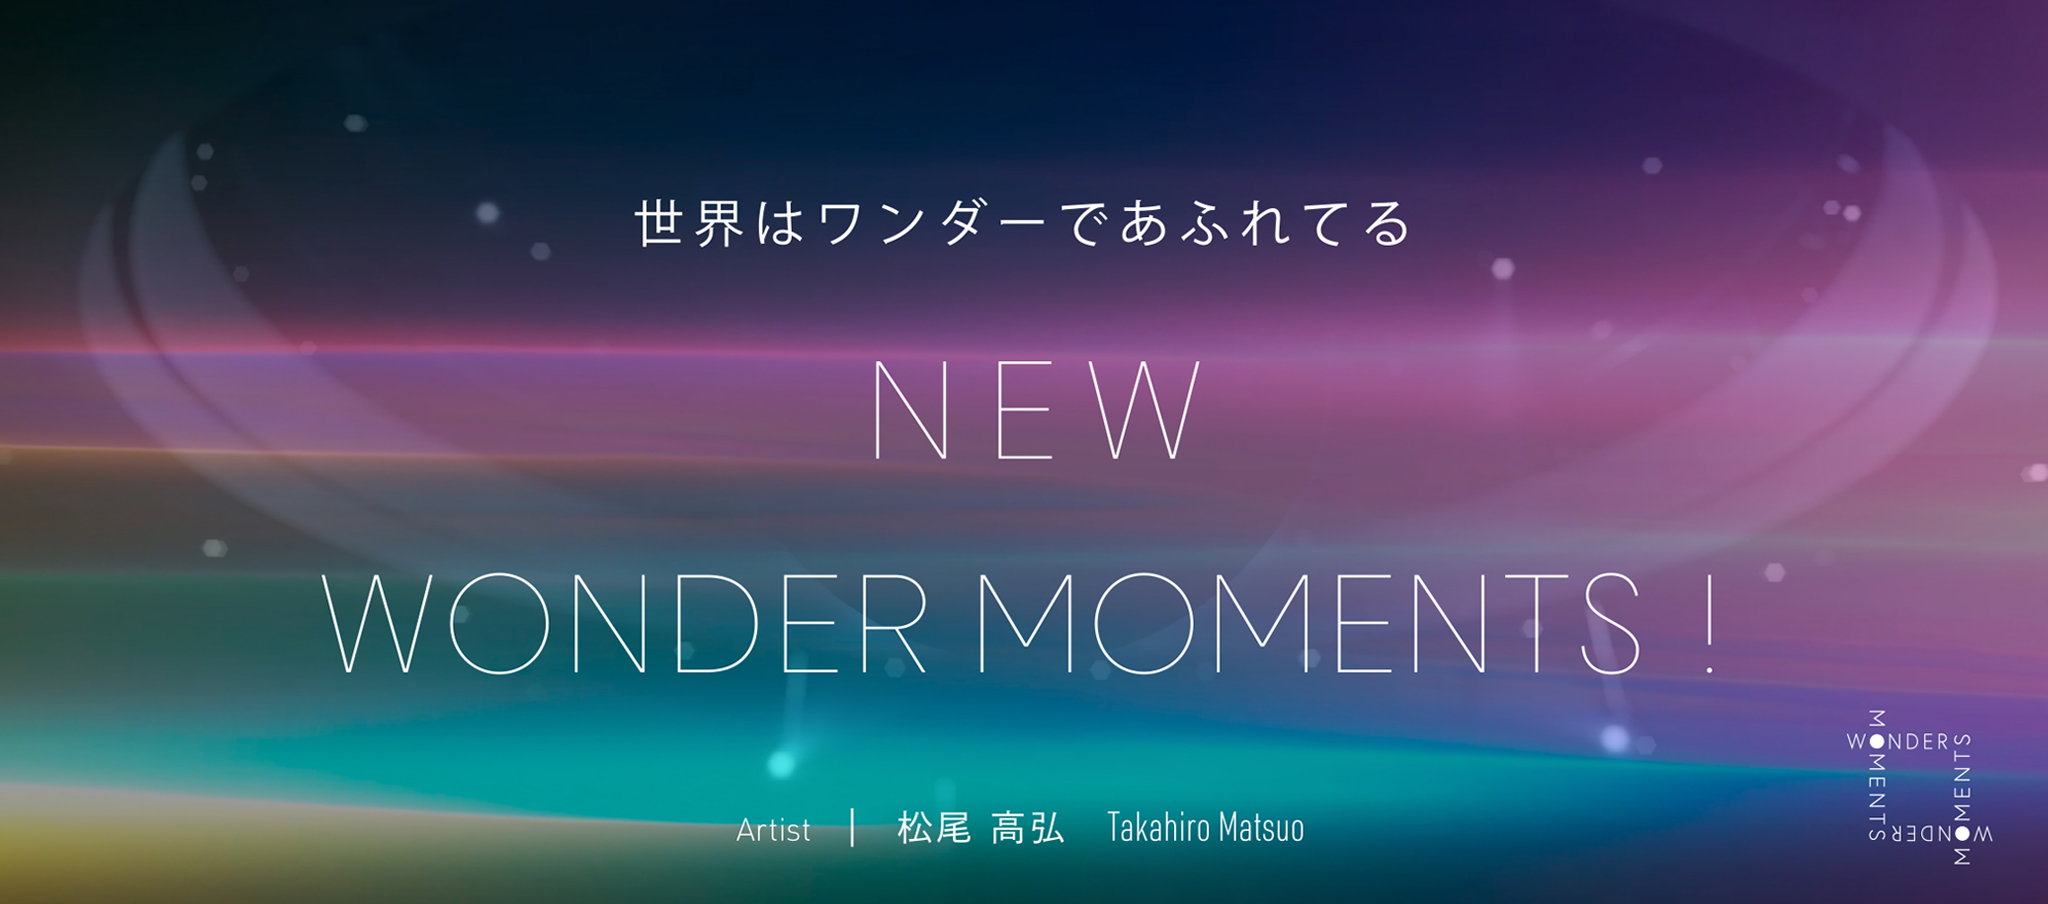 世界はワンダーであふれてる「NEW WONDER MOMENTS!」Artist：松尾 高弘 Takahiro Matsuo